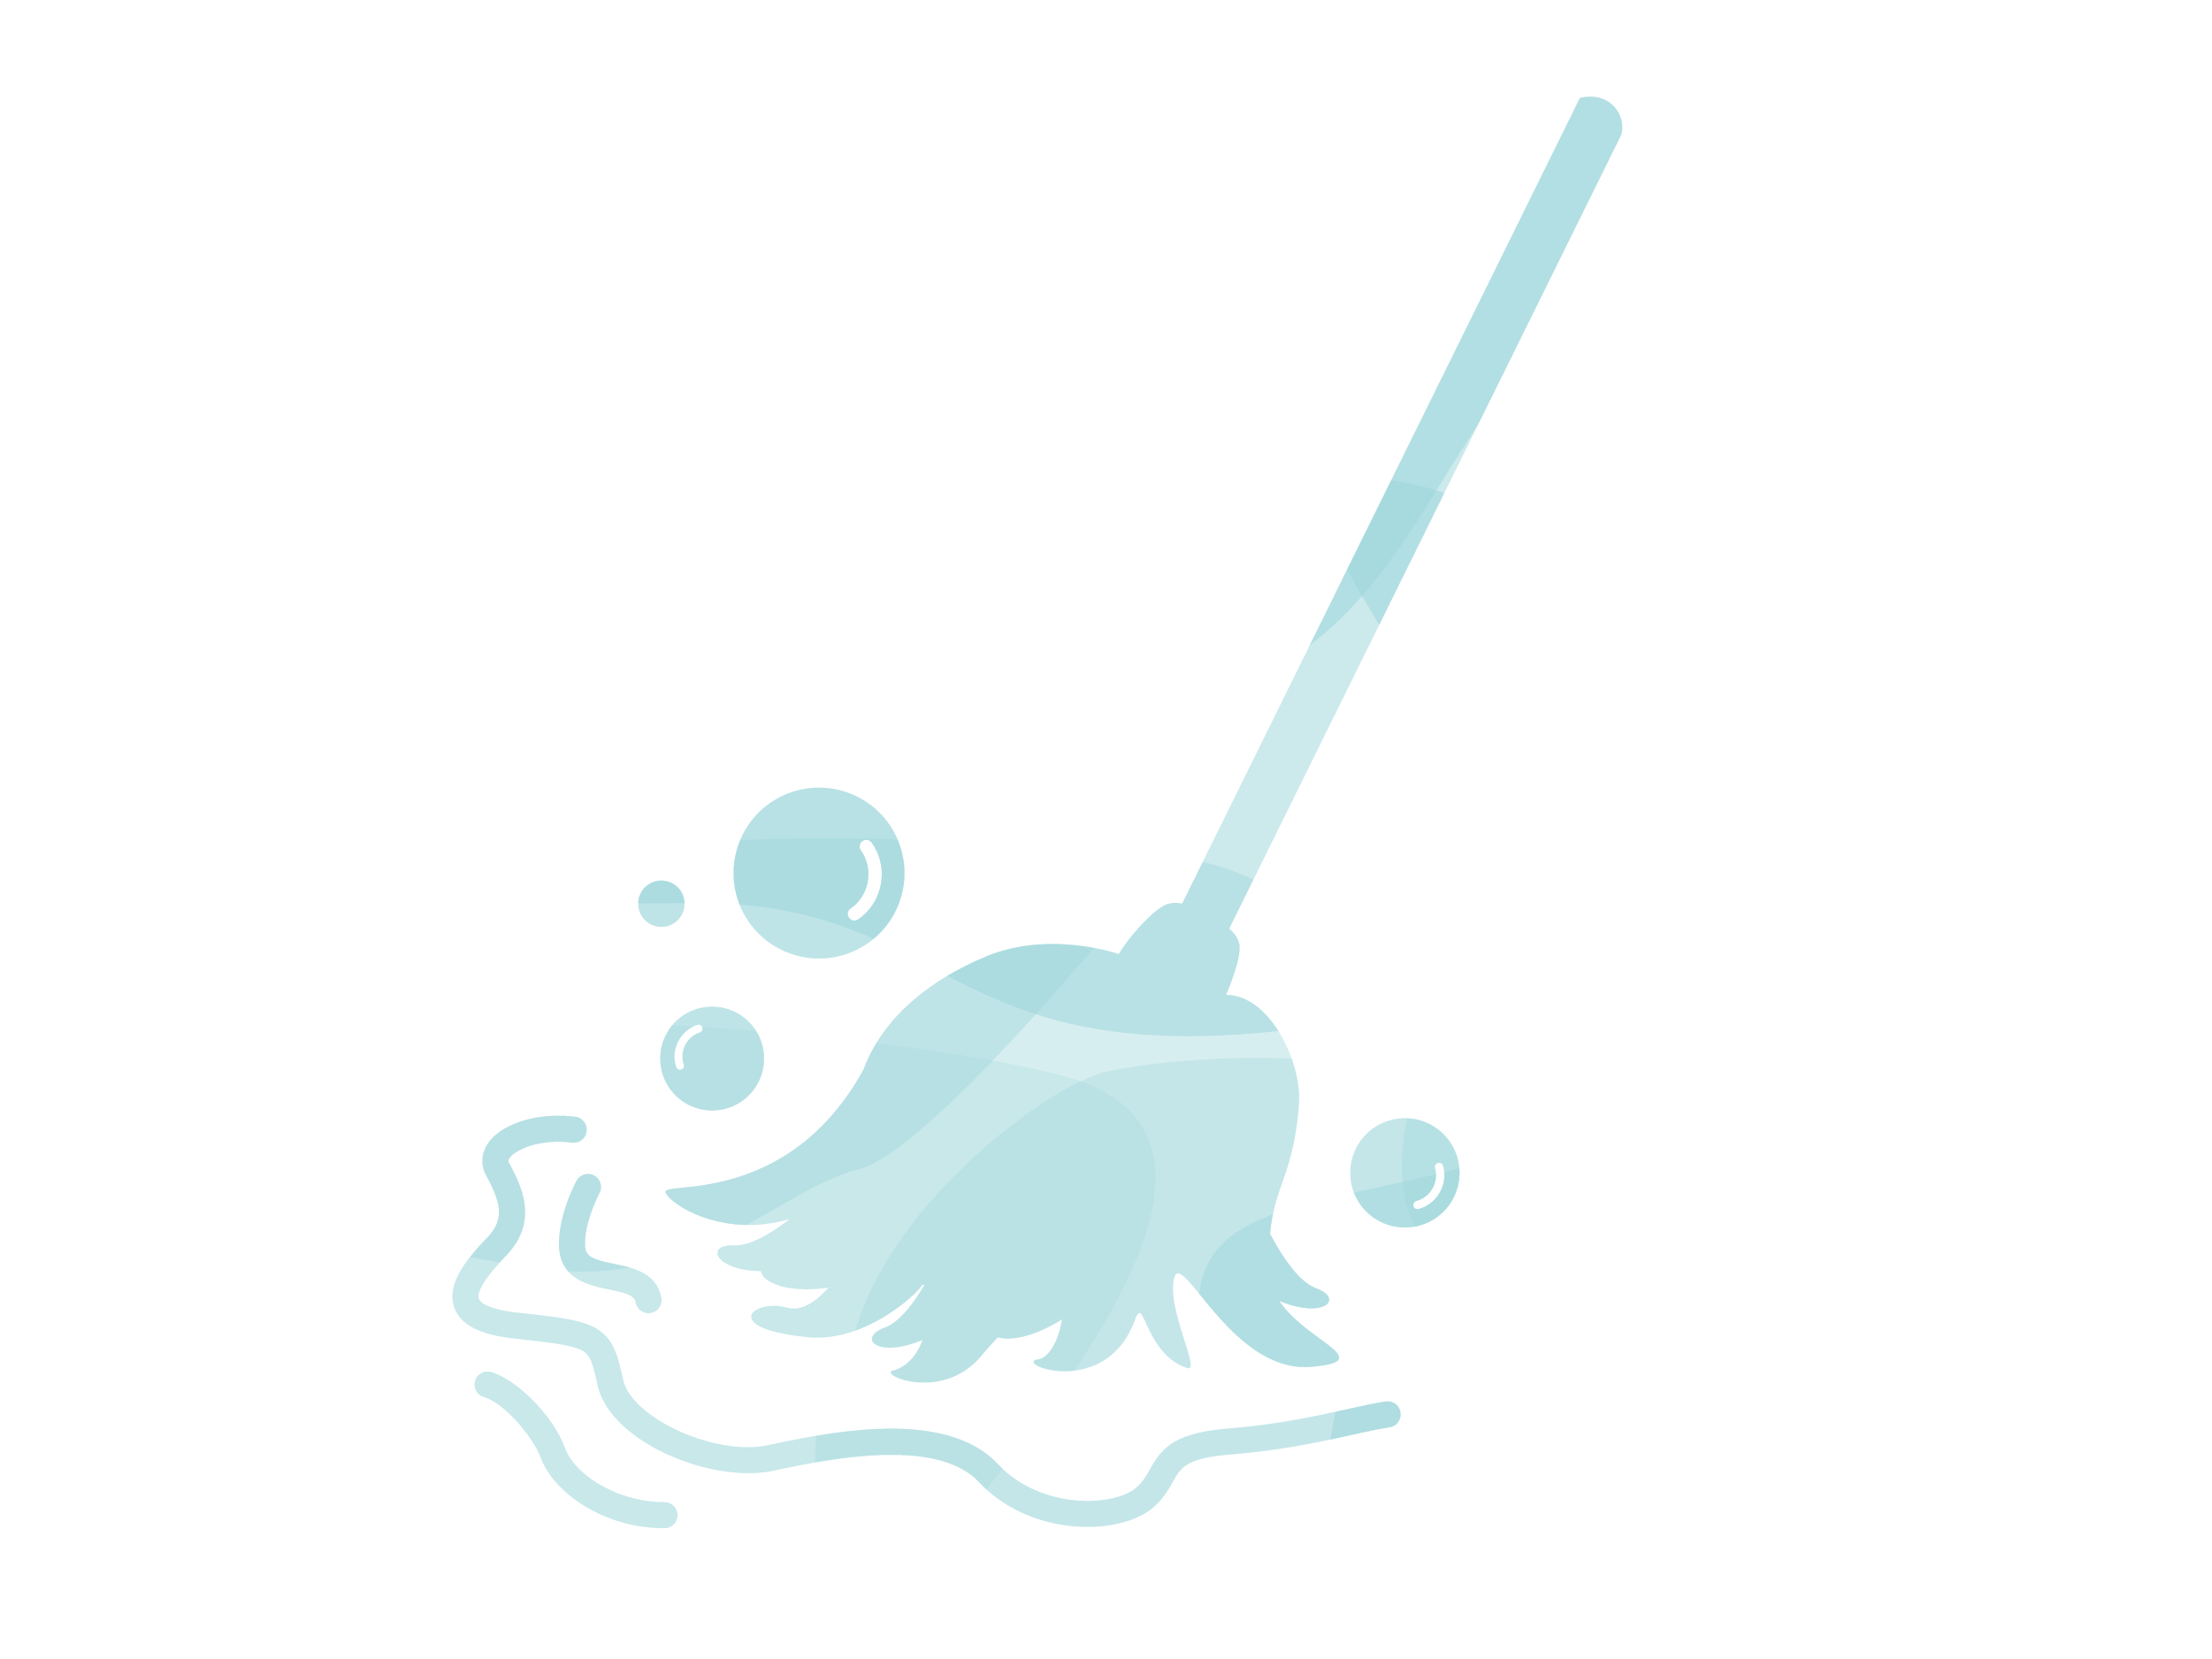 Blue mop illustration